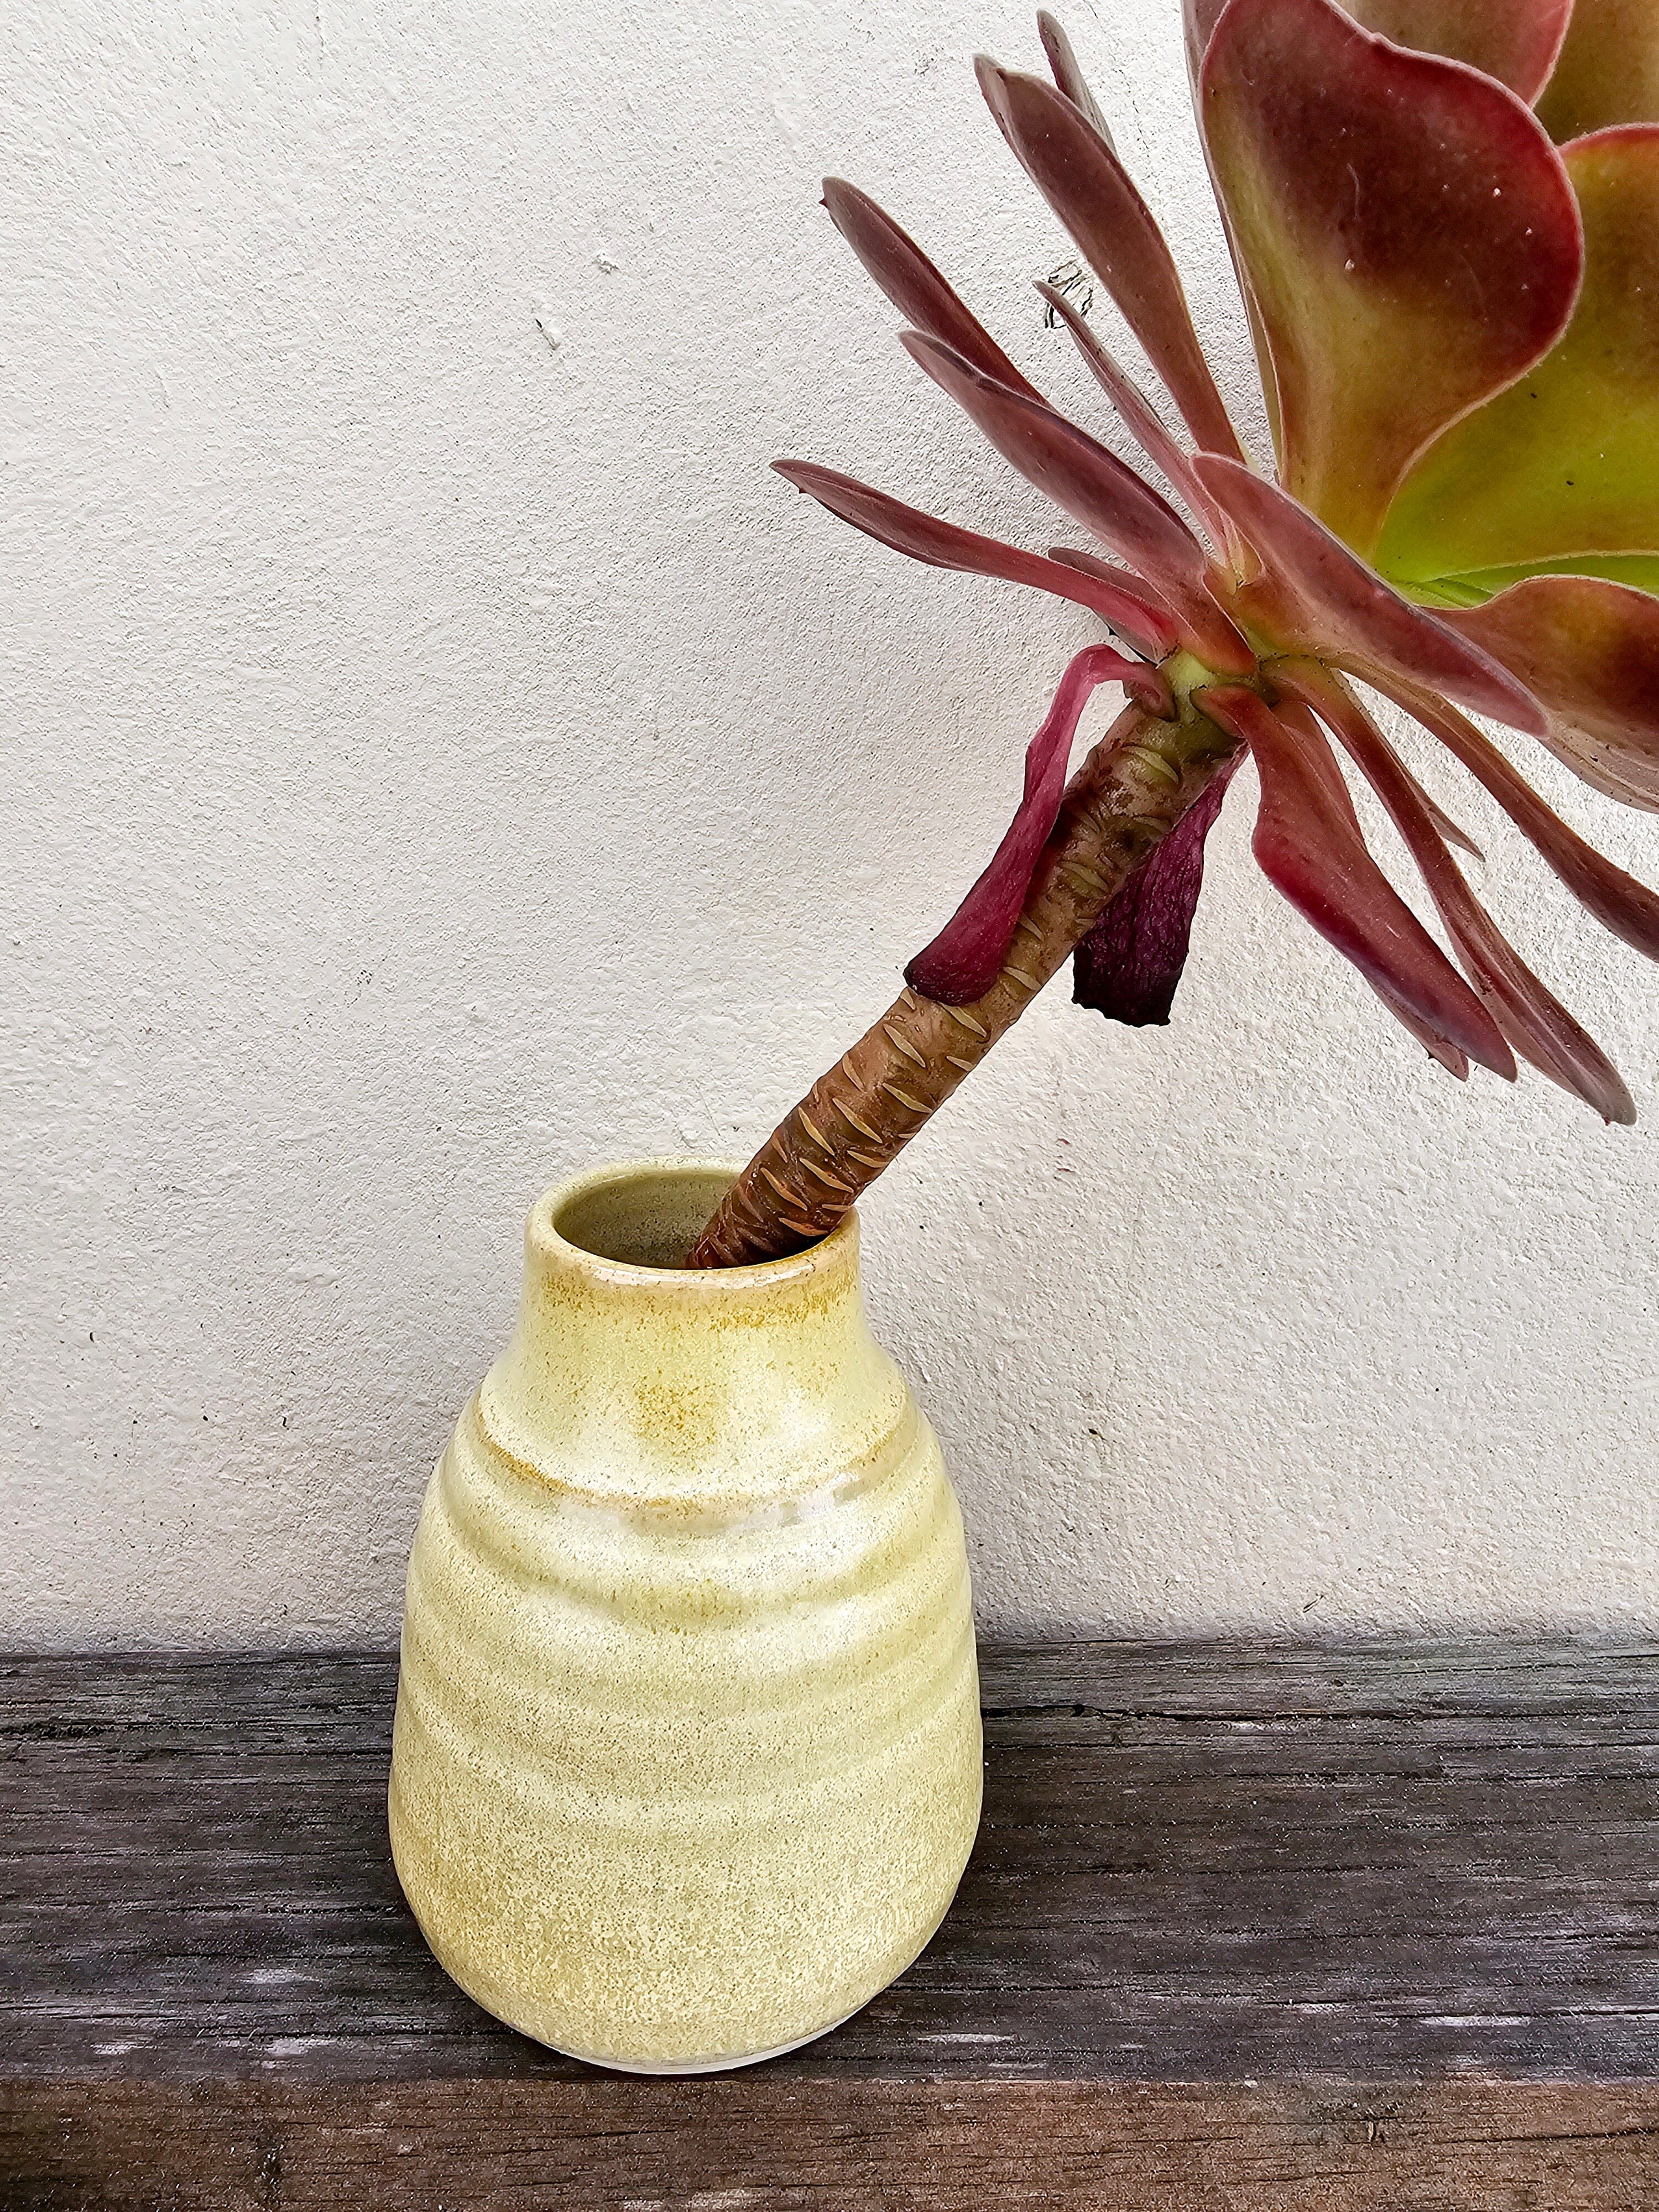 Handmade Ceramic Vases - The Little Mud Room Vase The Little Mud Room Med Rustic Squat 